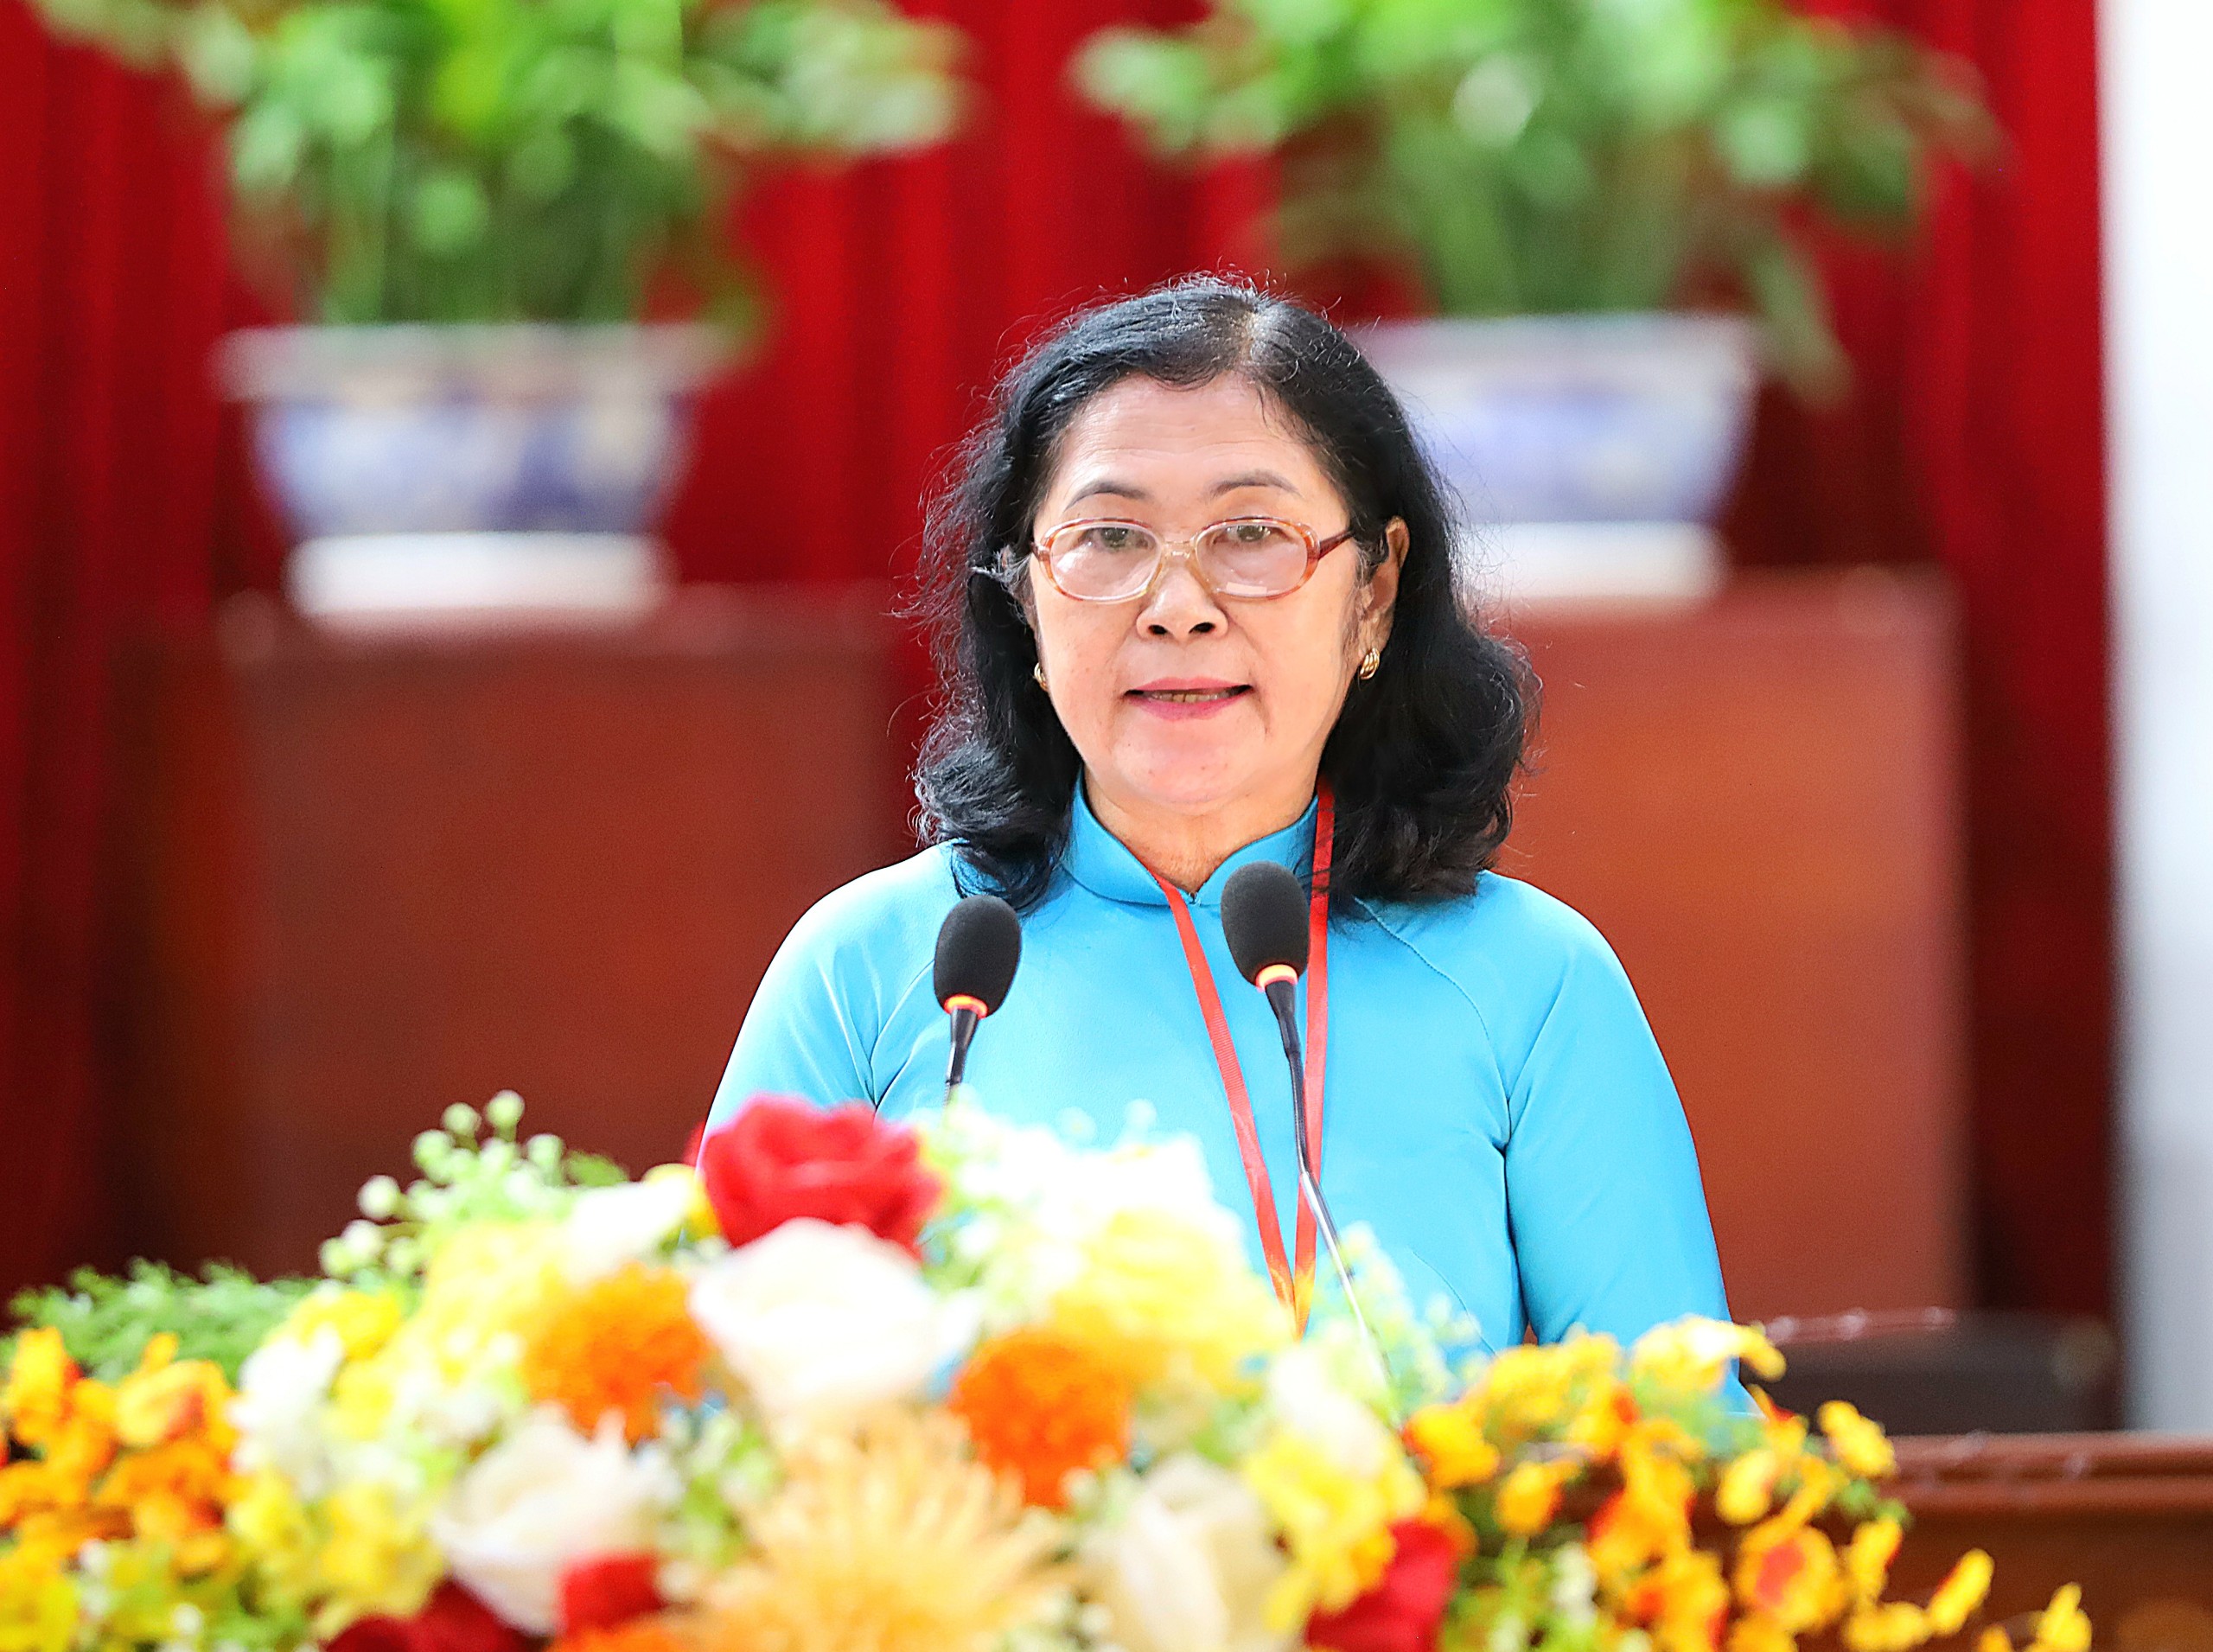 Bà Trần Lê Mộng Châu - Phó Chủ tịch Liên hiệp các tổ chức hữu nghị TP. Cần Thơ thông qua tóm tắt dự thảo Báo cáo chính trị nhiệm kỳ 2018 - 2023 và phương hướng hoạt động nhiệm kỳ 2024 - 2029.